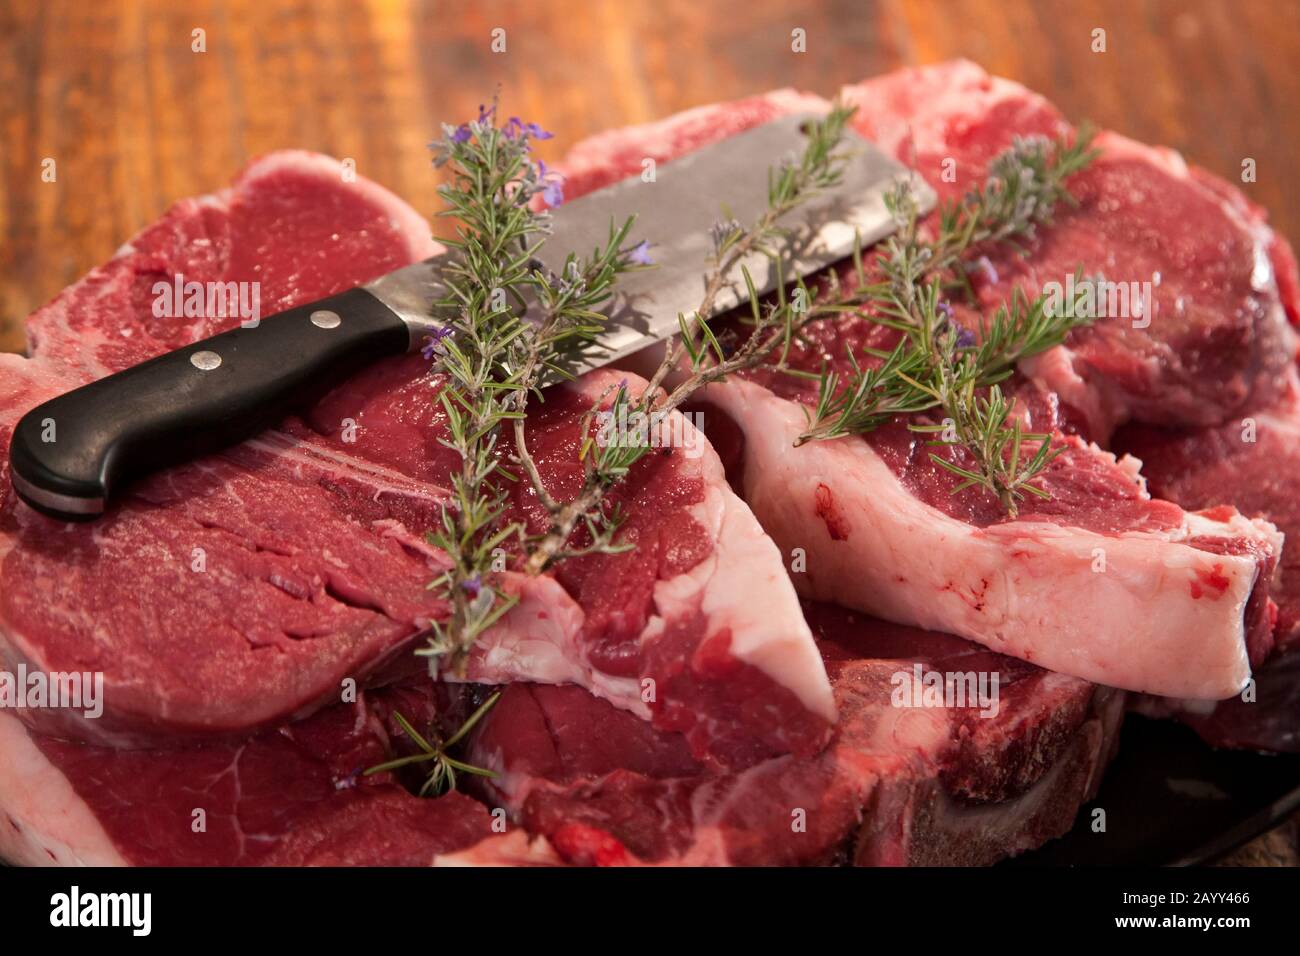 Bistecca Florentine oder italienisches T-Bone Steak, Toskana, Italien. Stockfoto